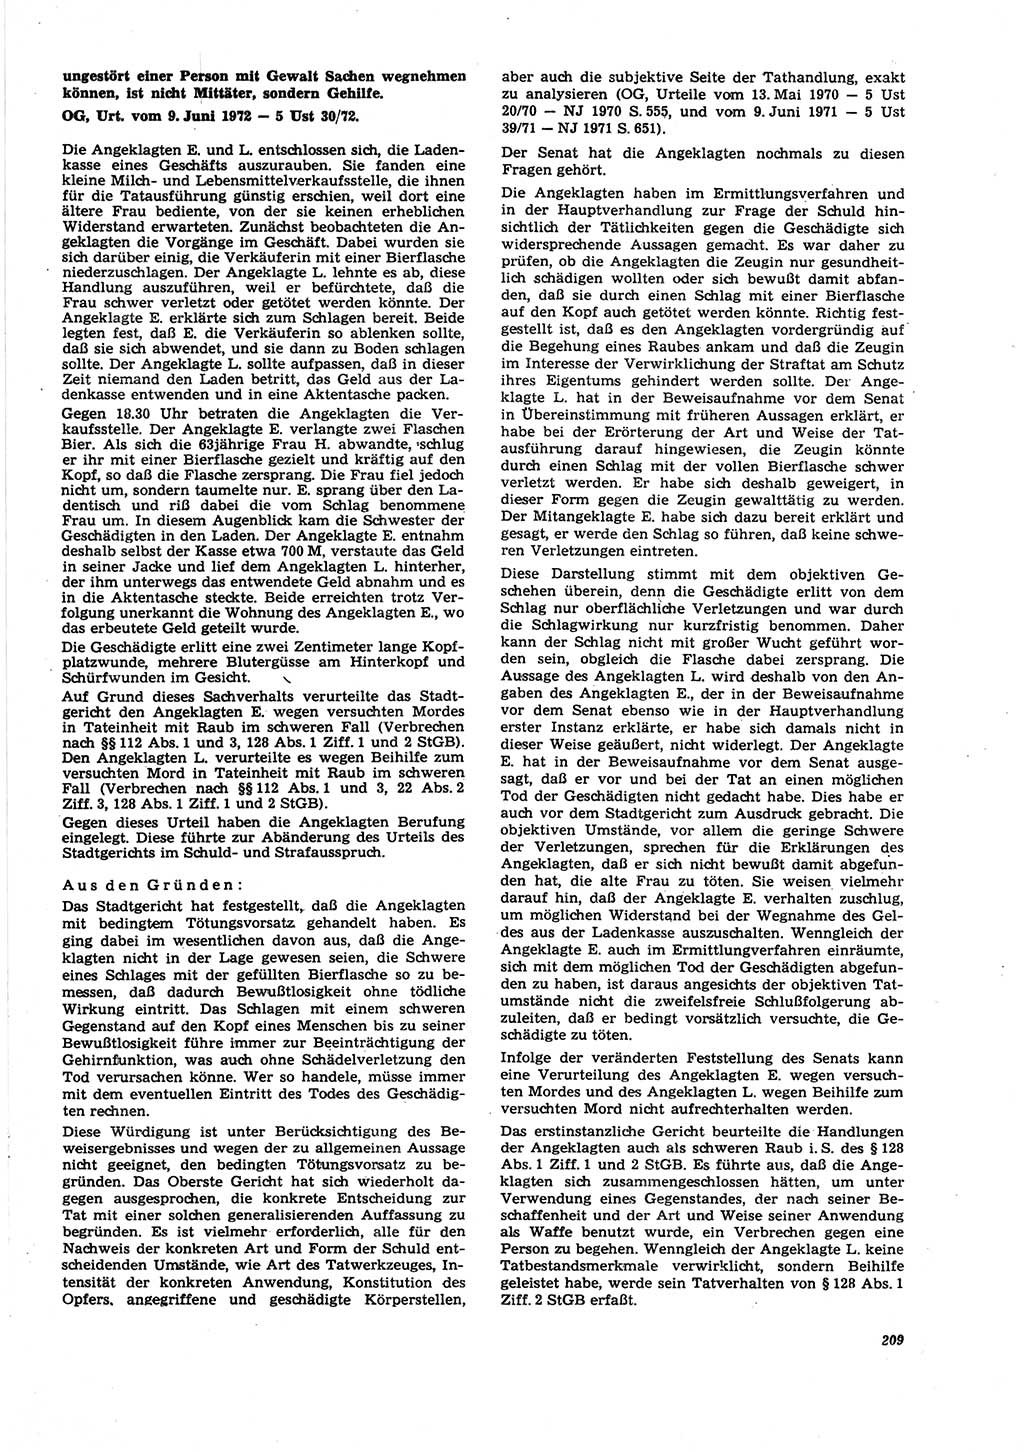 Neue Justiz (NJ), Zeitschrift für Recht und Rechtswissenschaft [Deutsche Demokratische Republik (DDR)], 27. Jahrgang 1973, Seite 209 (NJ DDR 1973, S. 209)